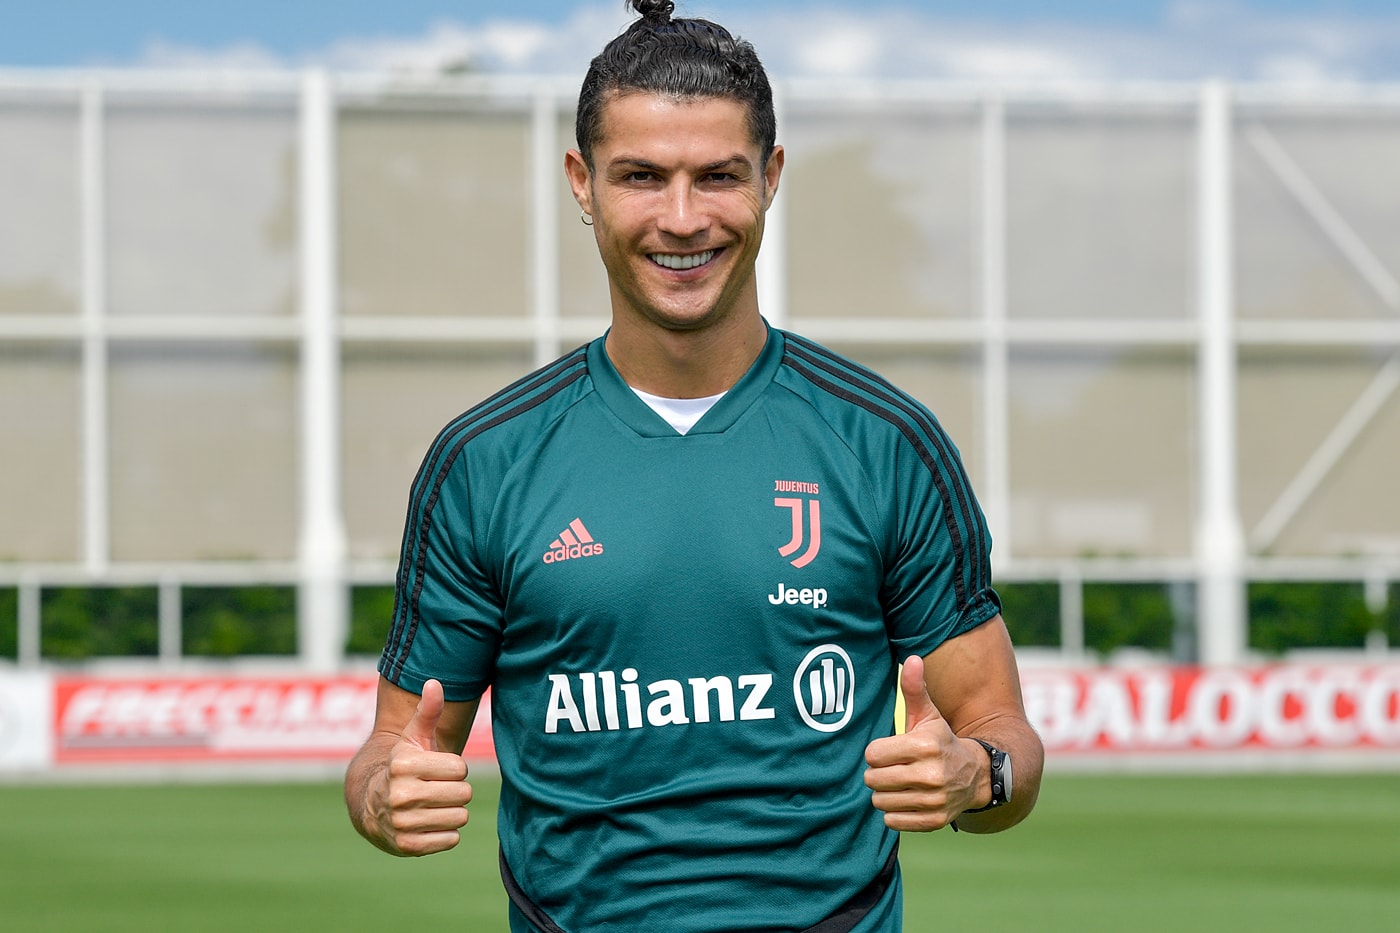 クリスティアーノ・ロナウドがサッカー選手として初のビリオネアに Cristiano Ronaldo World's First Billionaire Soccer Player soccer football wealth business sports stars Portuguese Juventus F.C. 